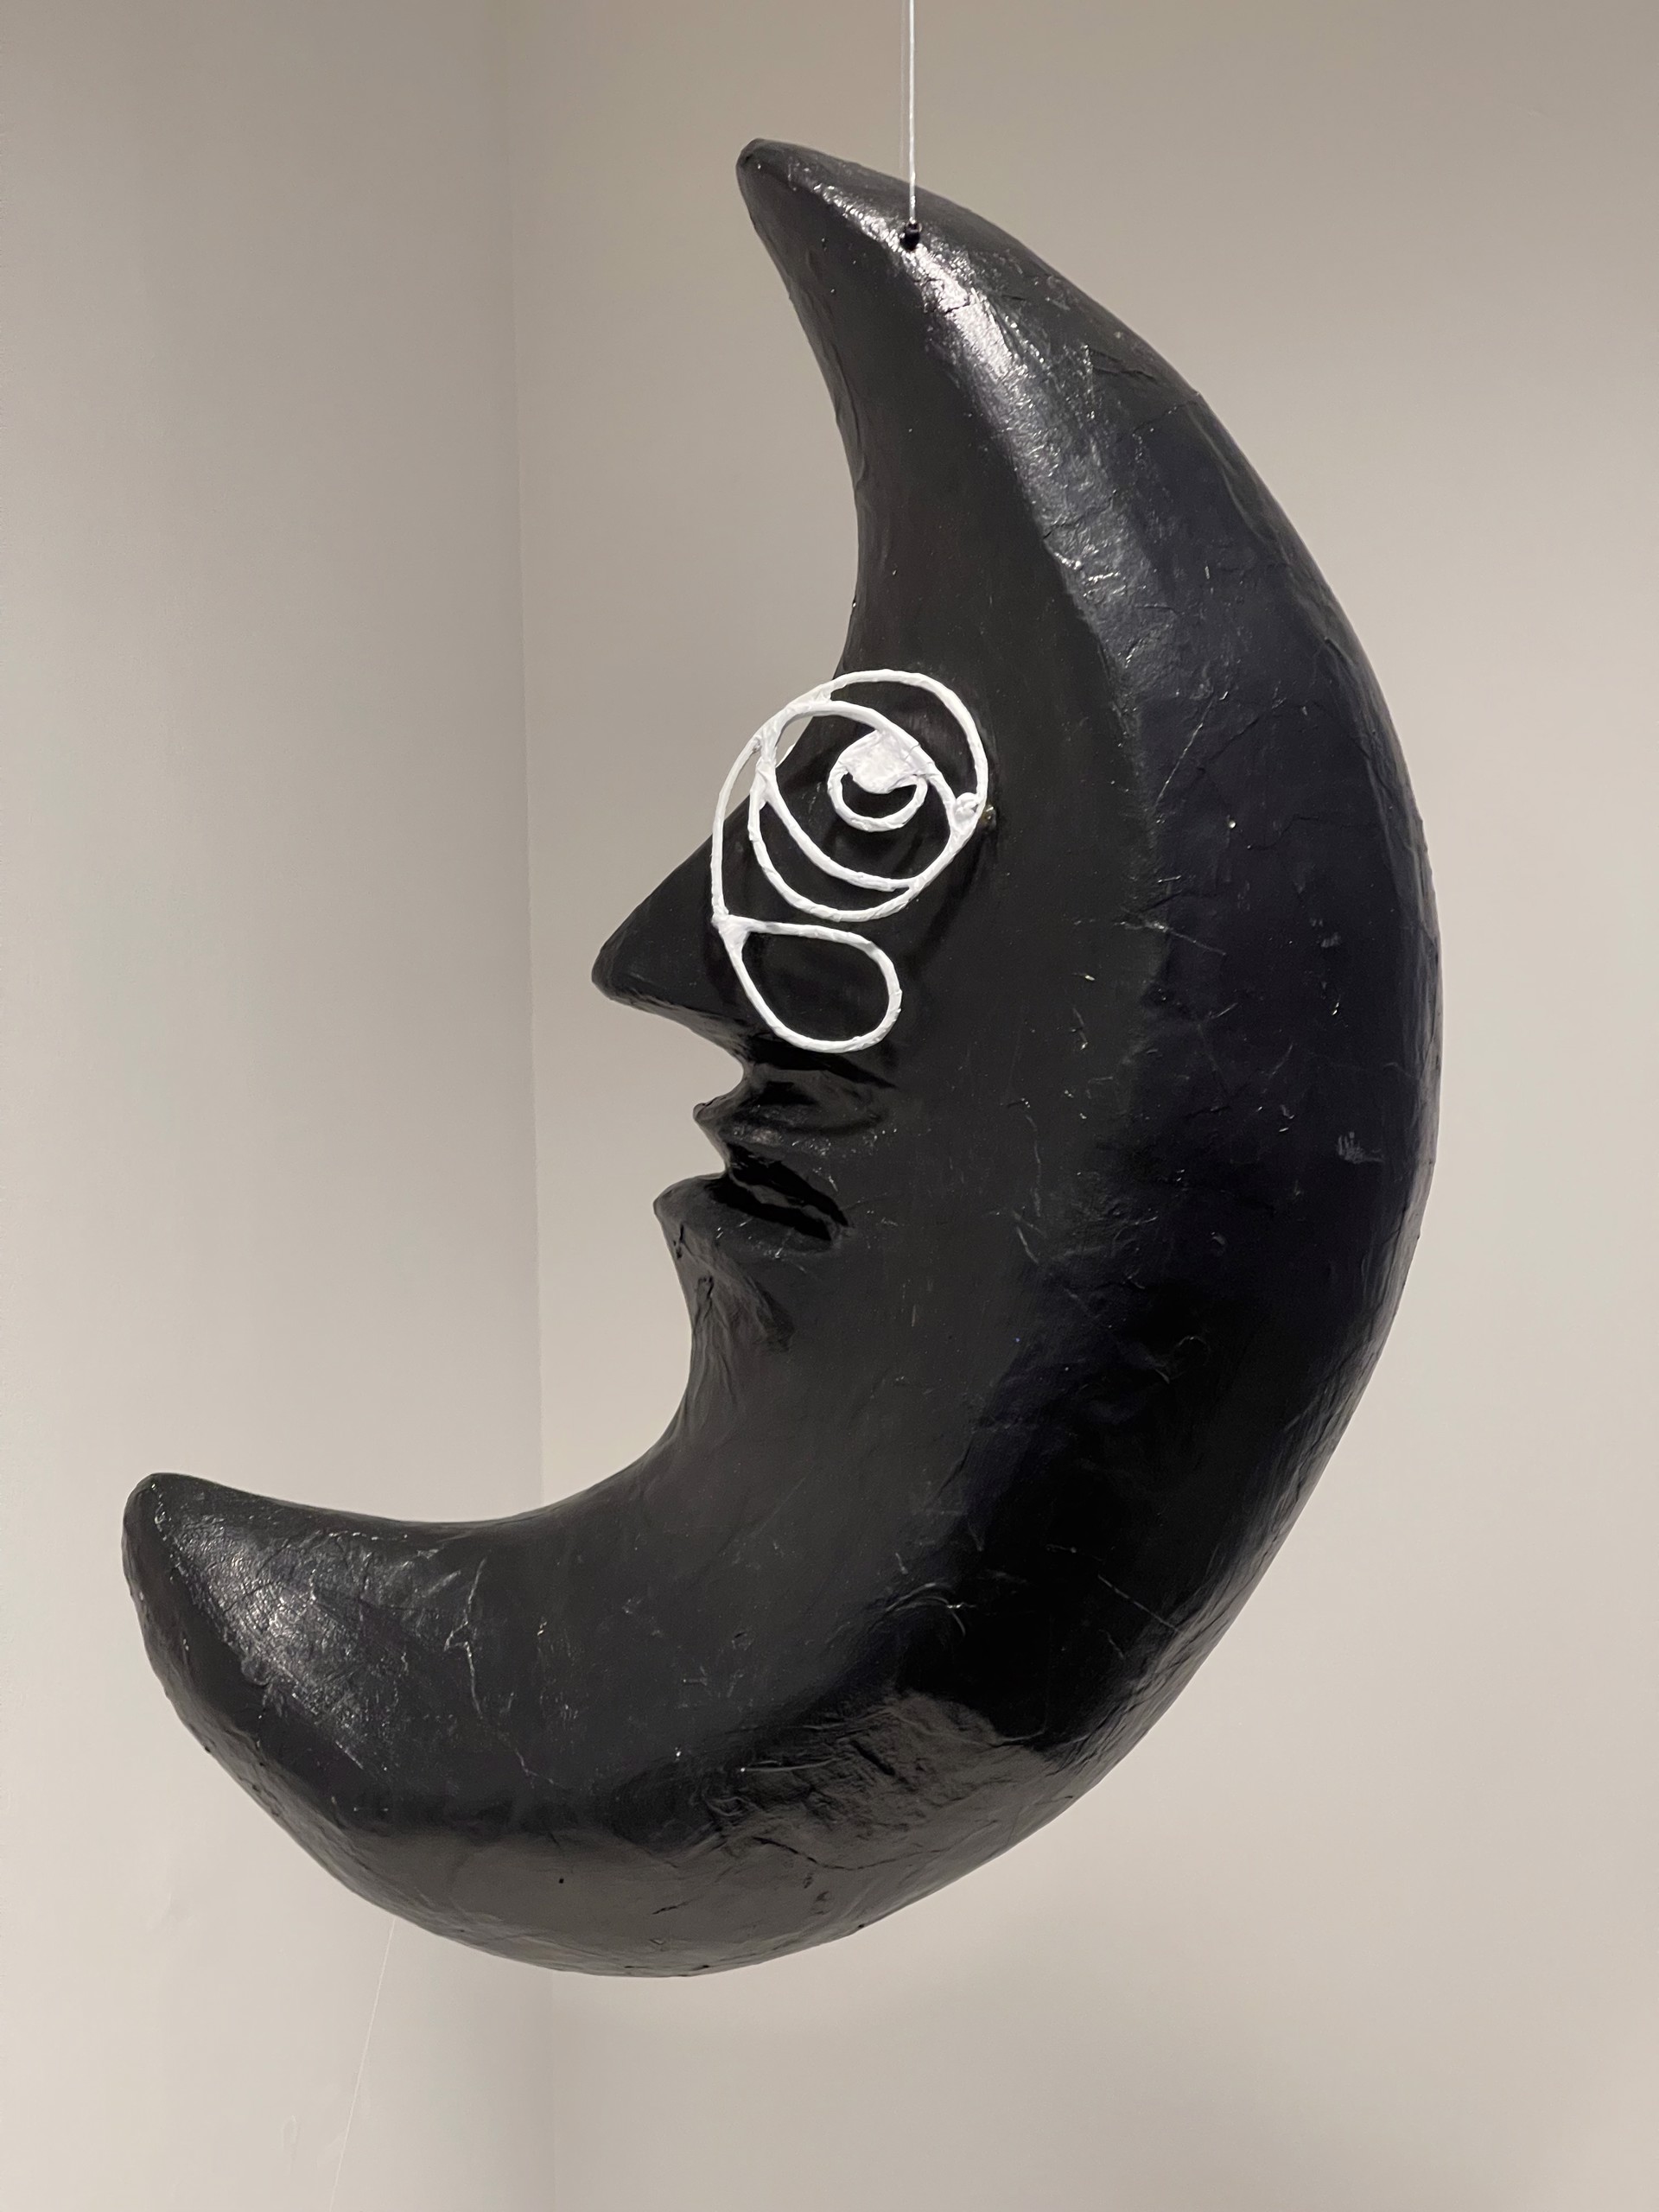 Vaivén, luna (Sway, Moon) by Rocca Luis Cesar